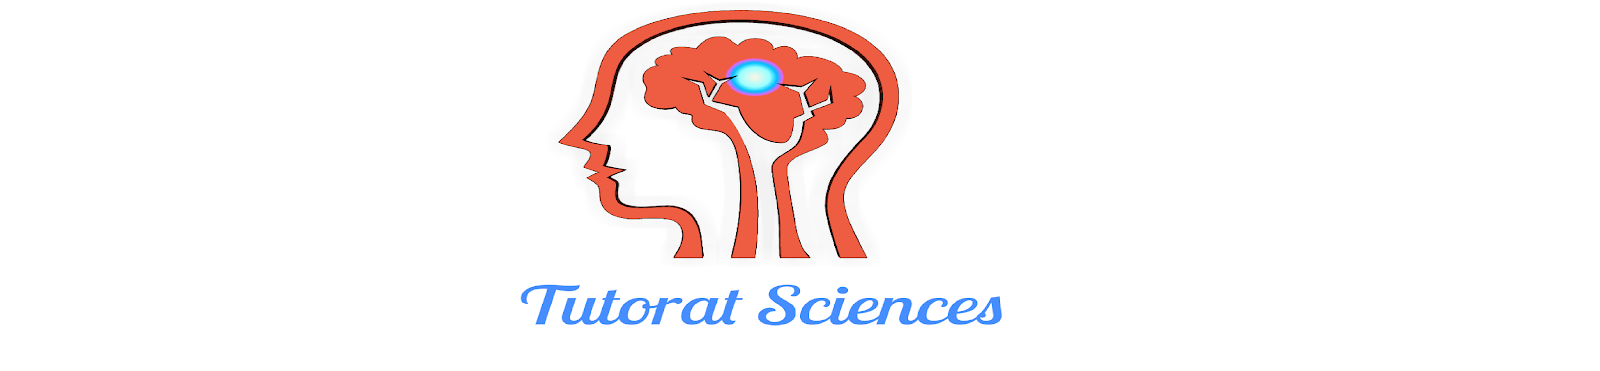 Tutorat Sciences